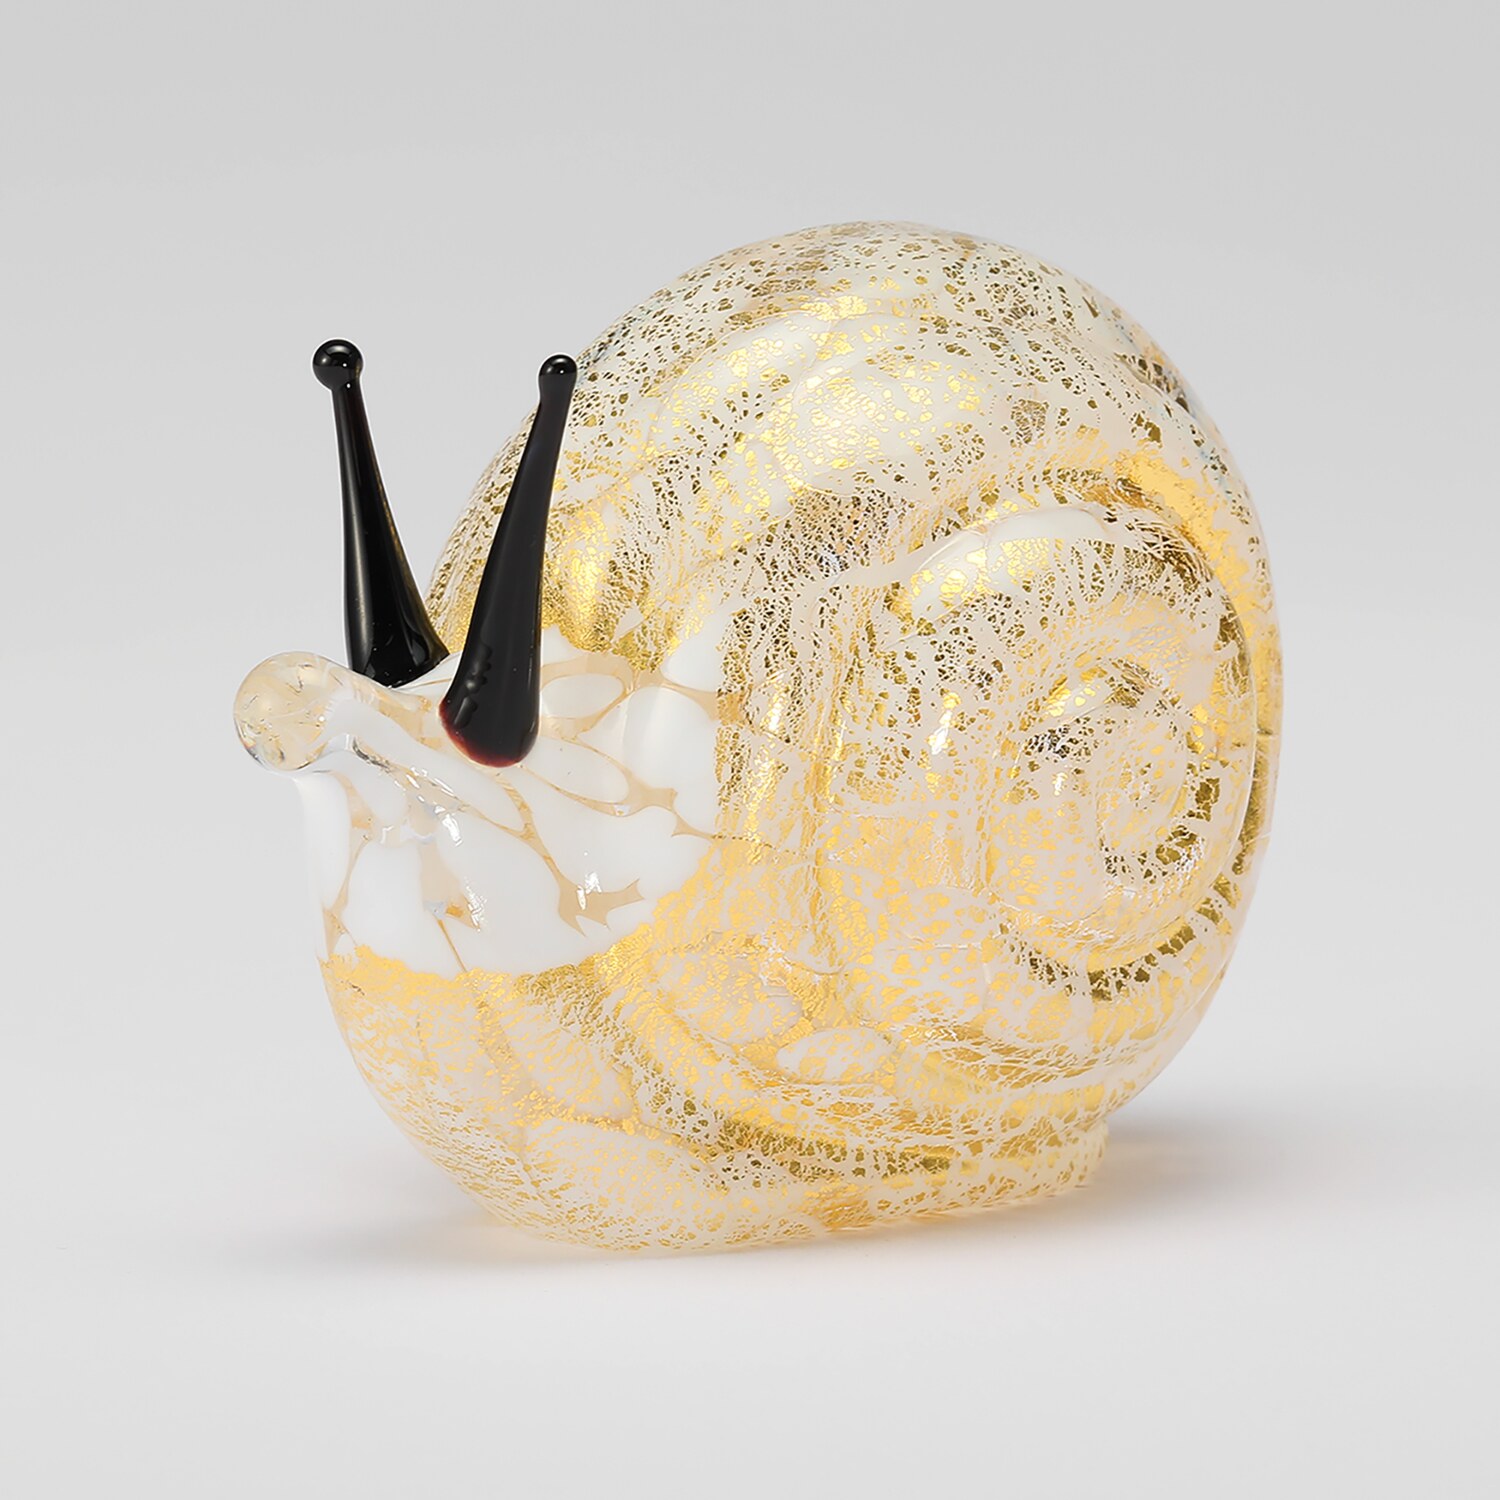 ヴェネチア美術館 ムラーノガラス カタツムリモティーフ オーナメント